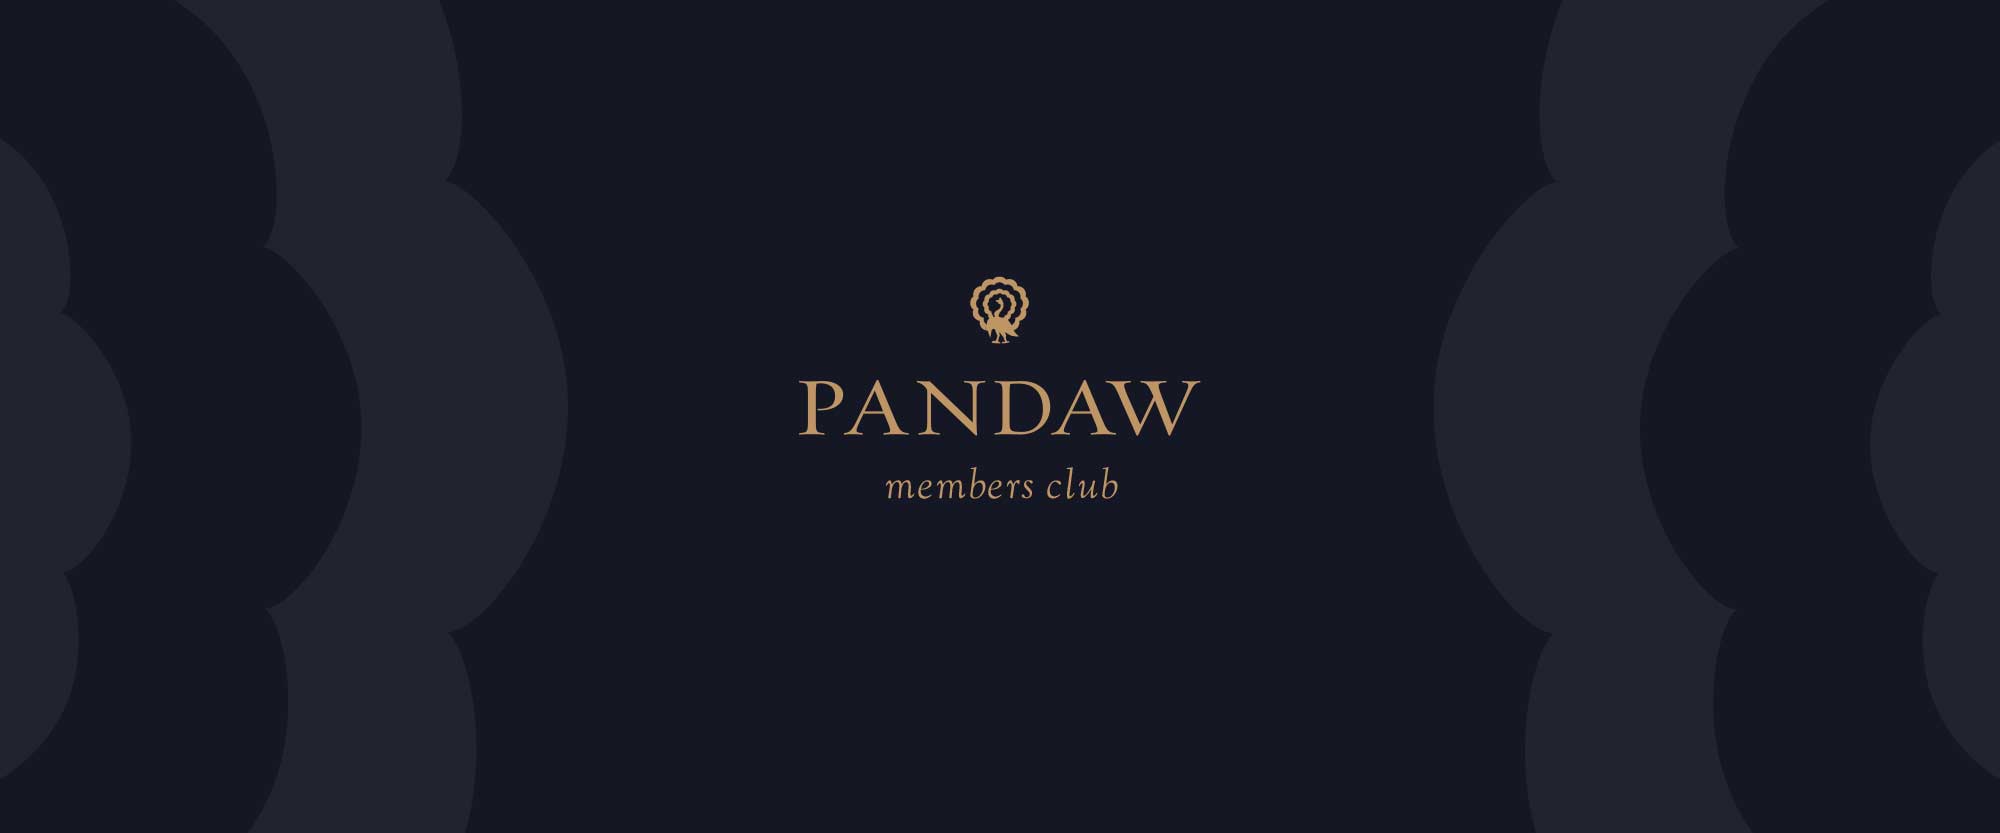 Pandaw Member's Club Update